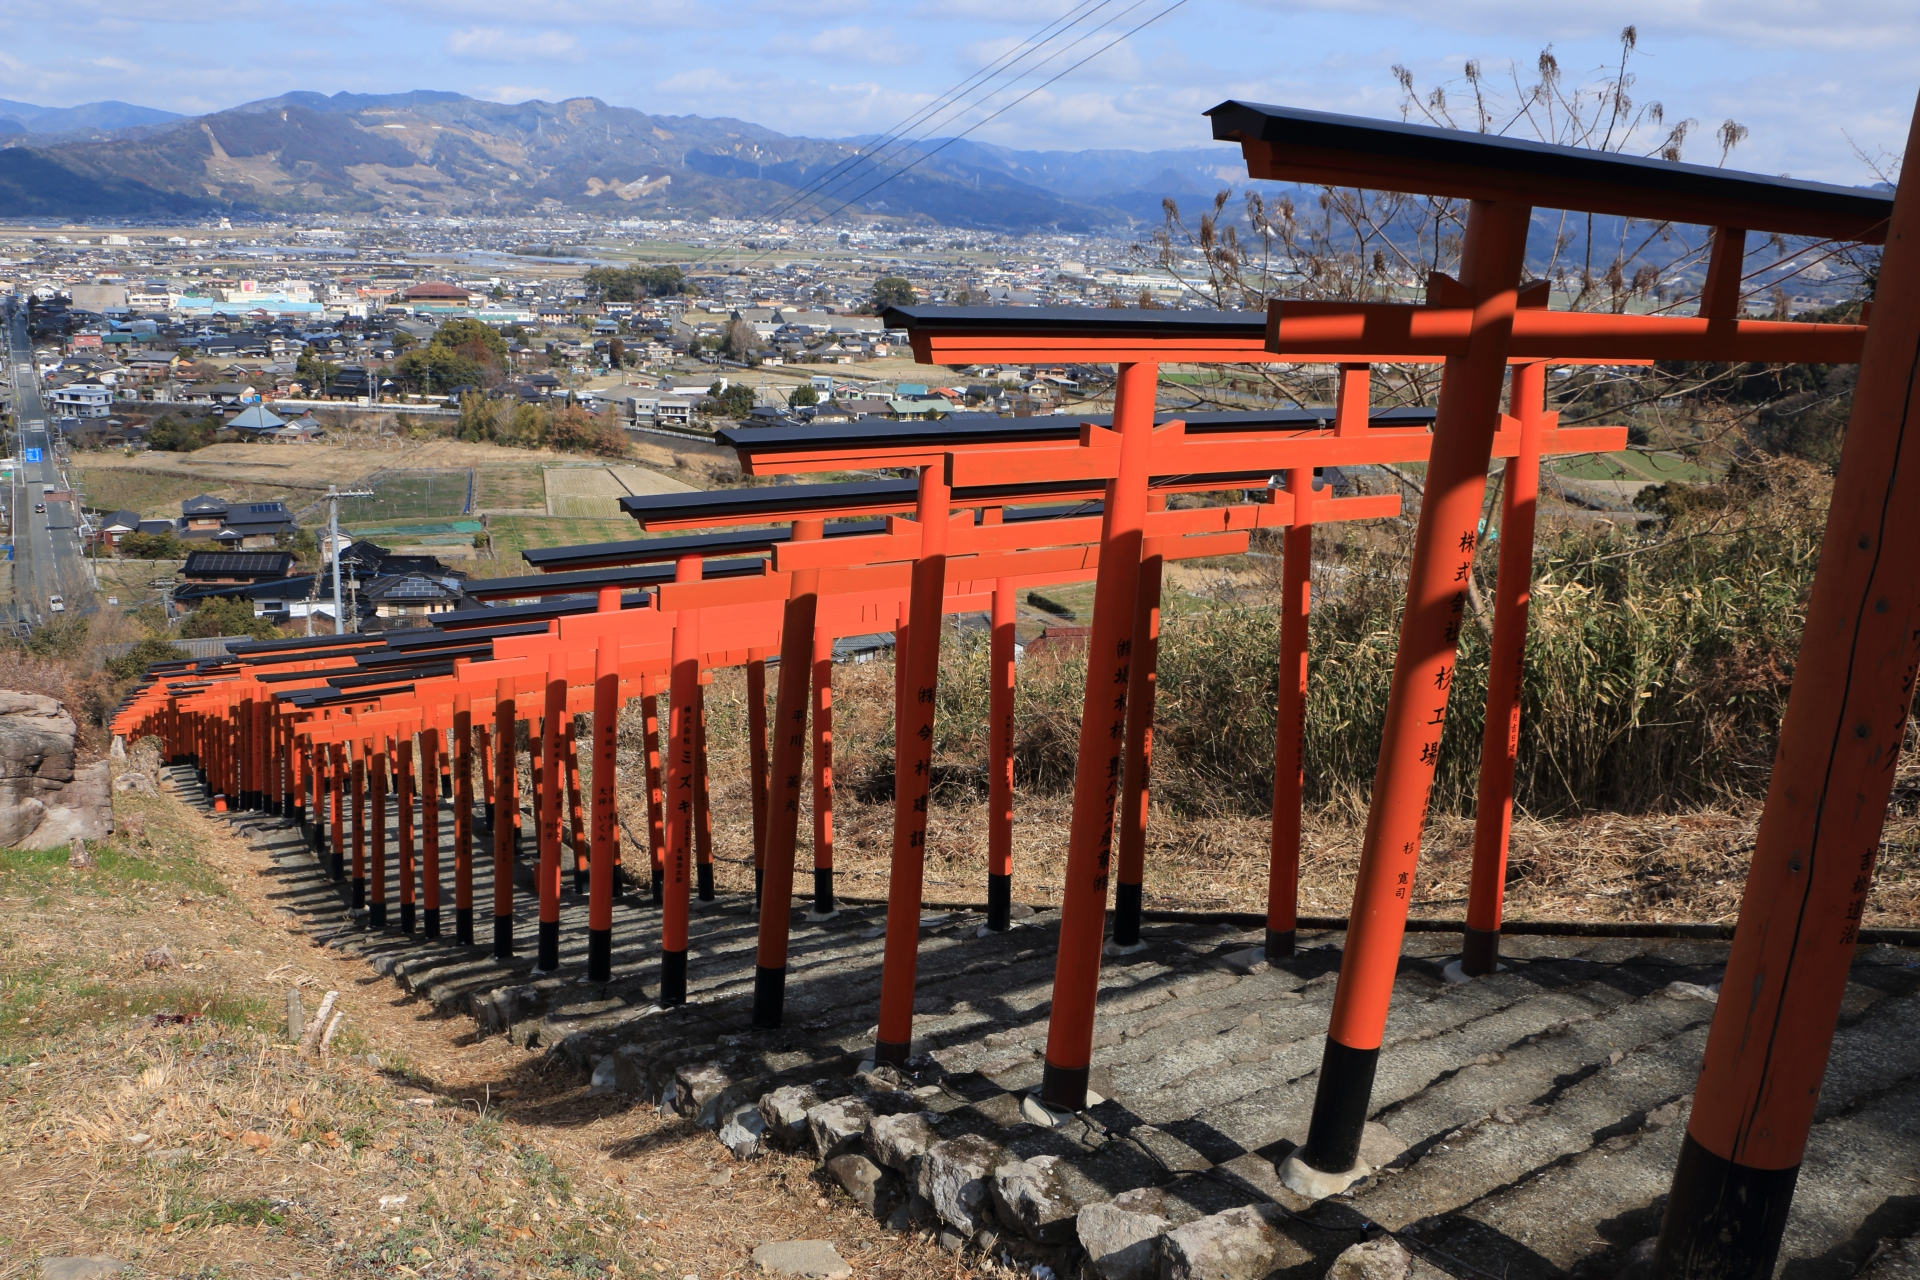 福岡県浮羽市にある神社。標高約500mの山中にあり、朱塗りの鳥居が連なる参道が有名。鳥居×91基が並ぶ